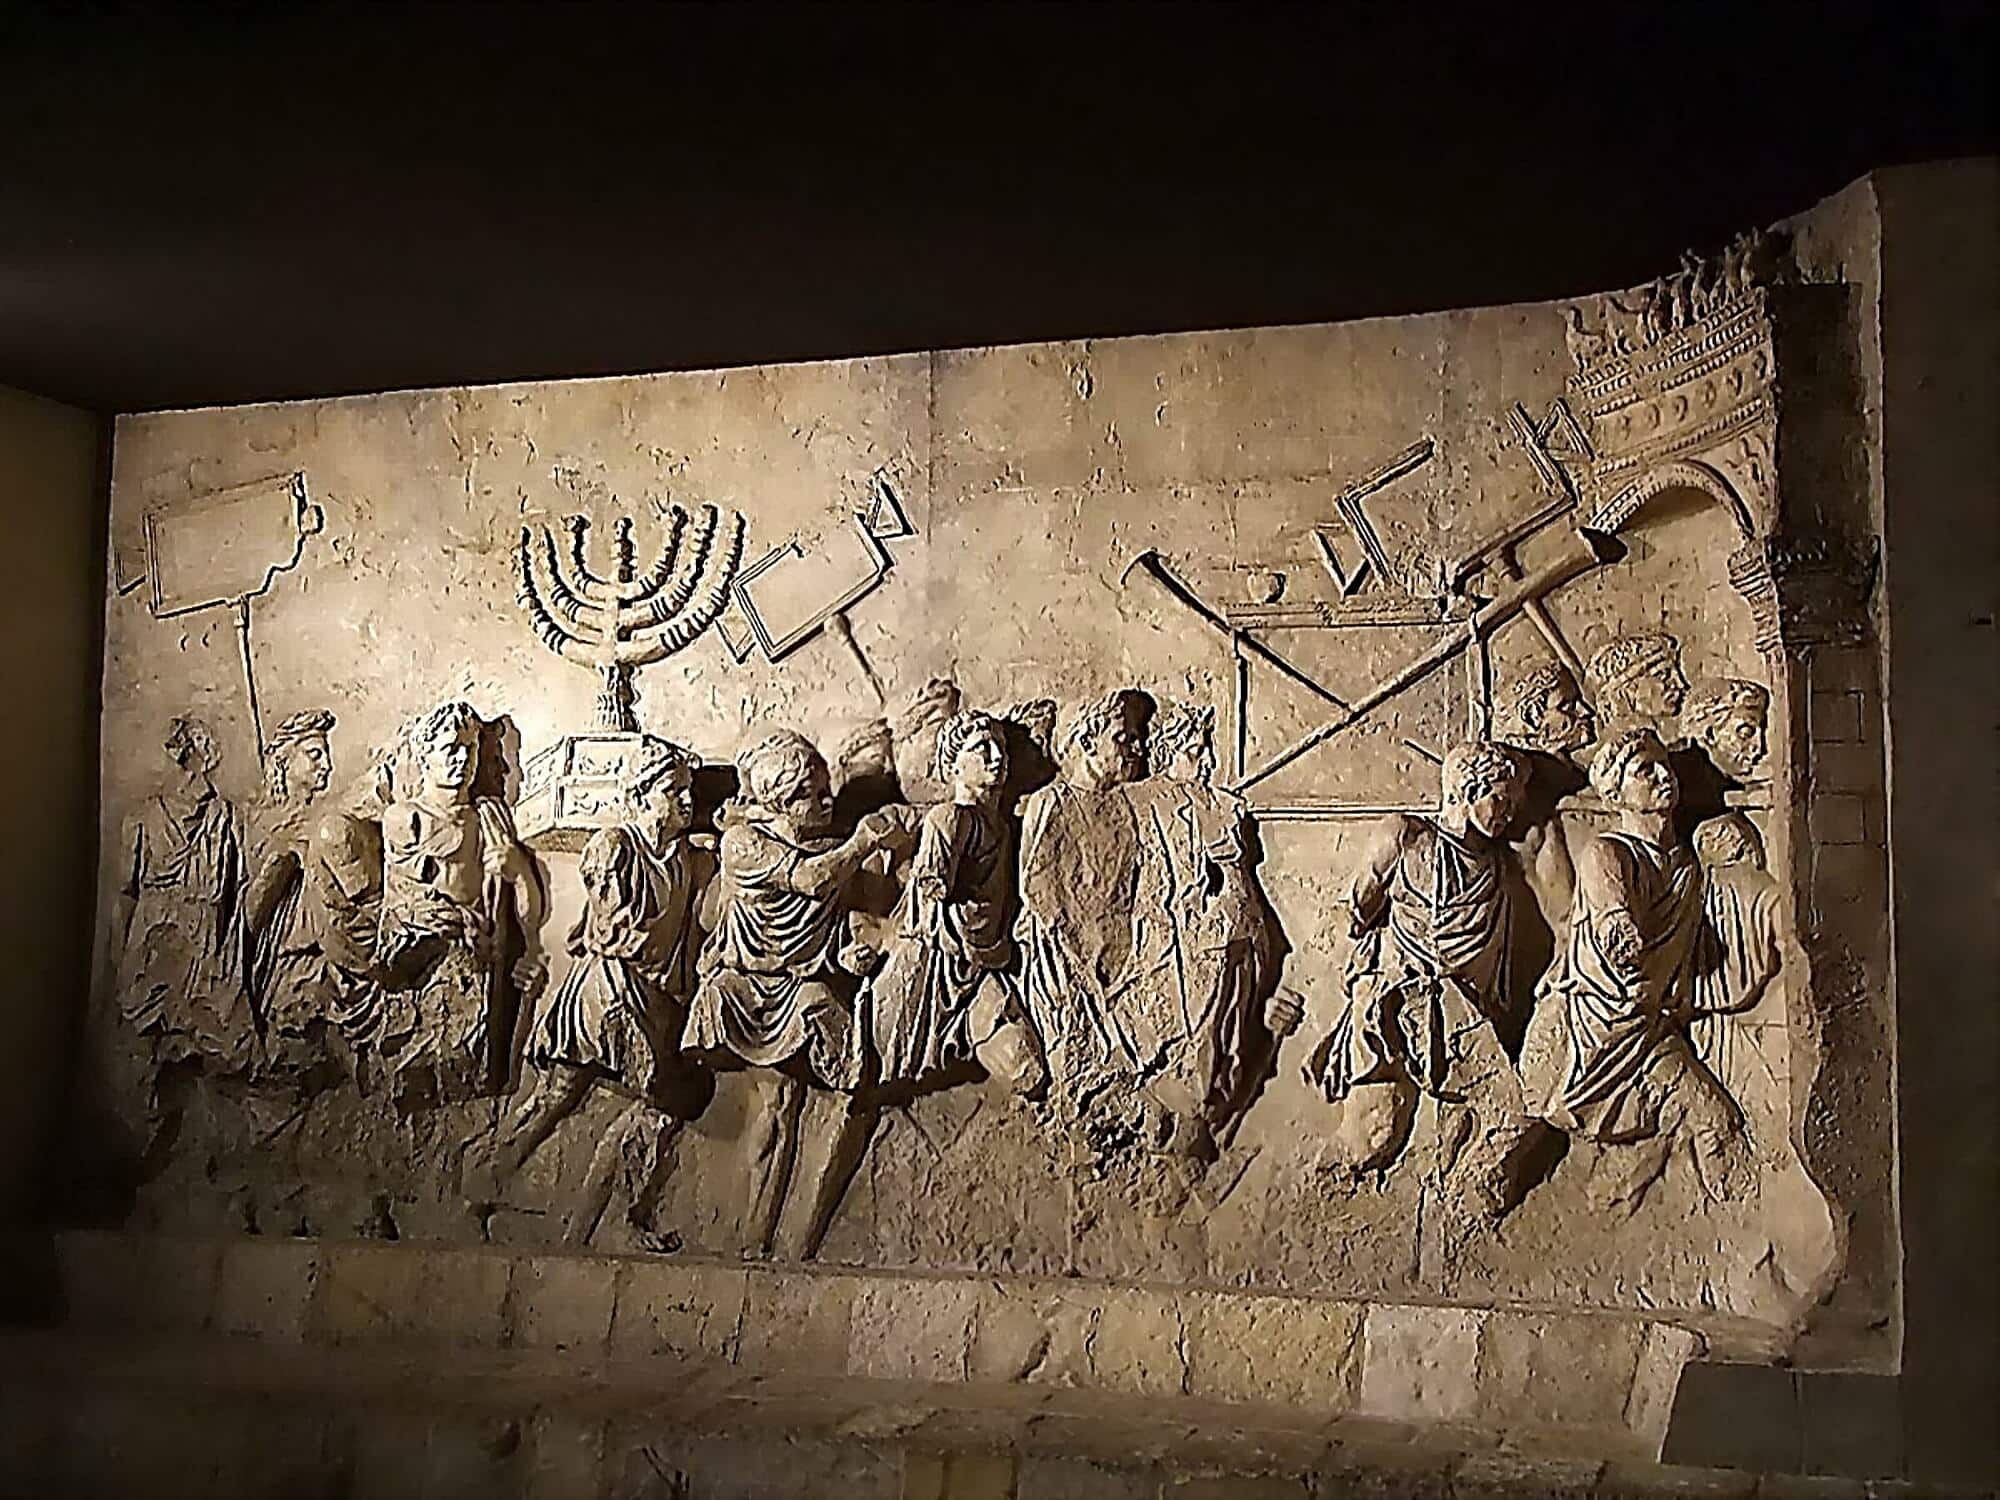 התבליט המפורסם על שער טיטוס בו מופיעים כלי המקדש שנבזזו מבית המקדש בירושלים. בצד ימין - החצוצרות.  <a href="https://depositphotos.com. ">איור: depositphotos.com</a>